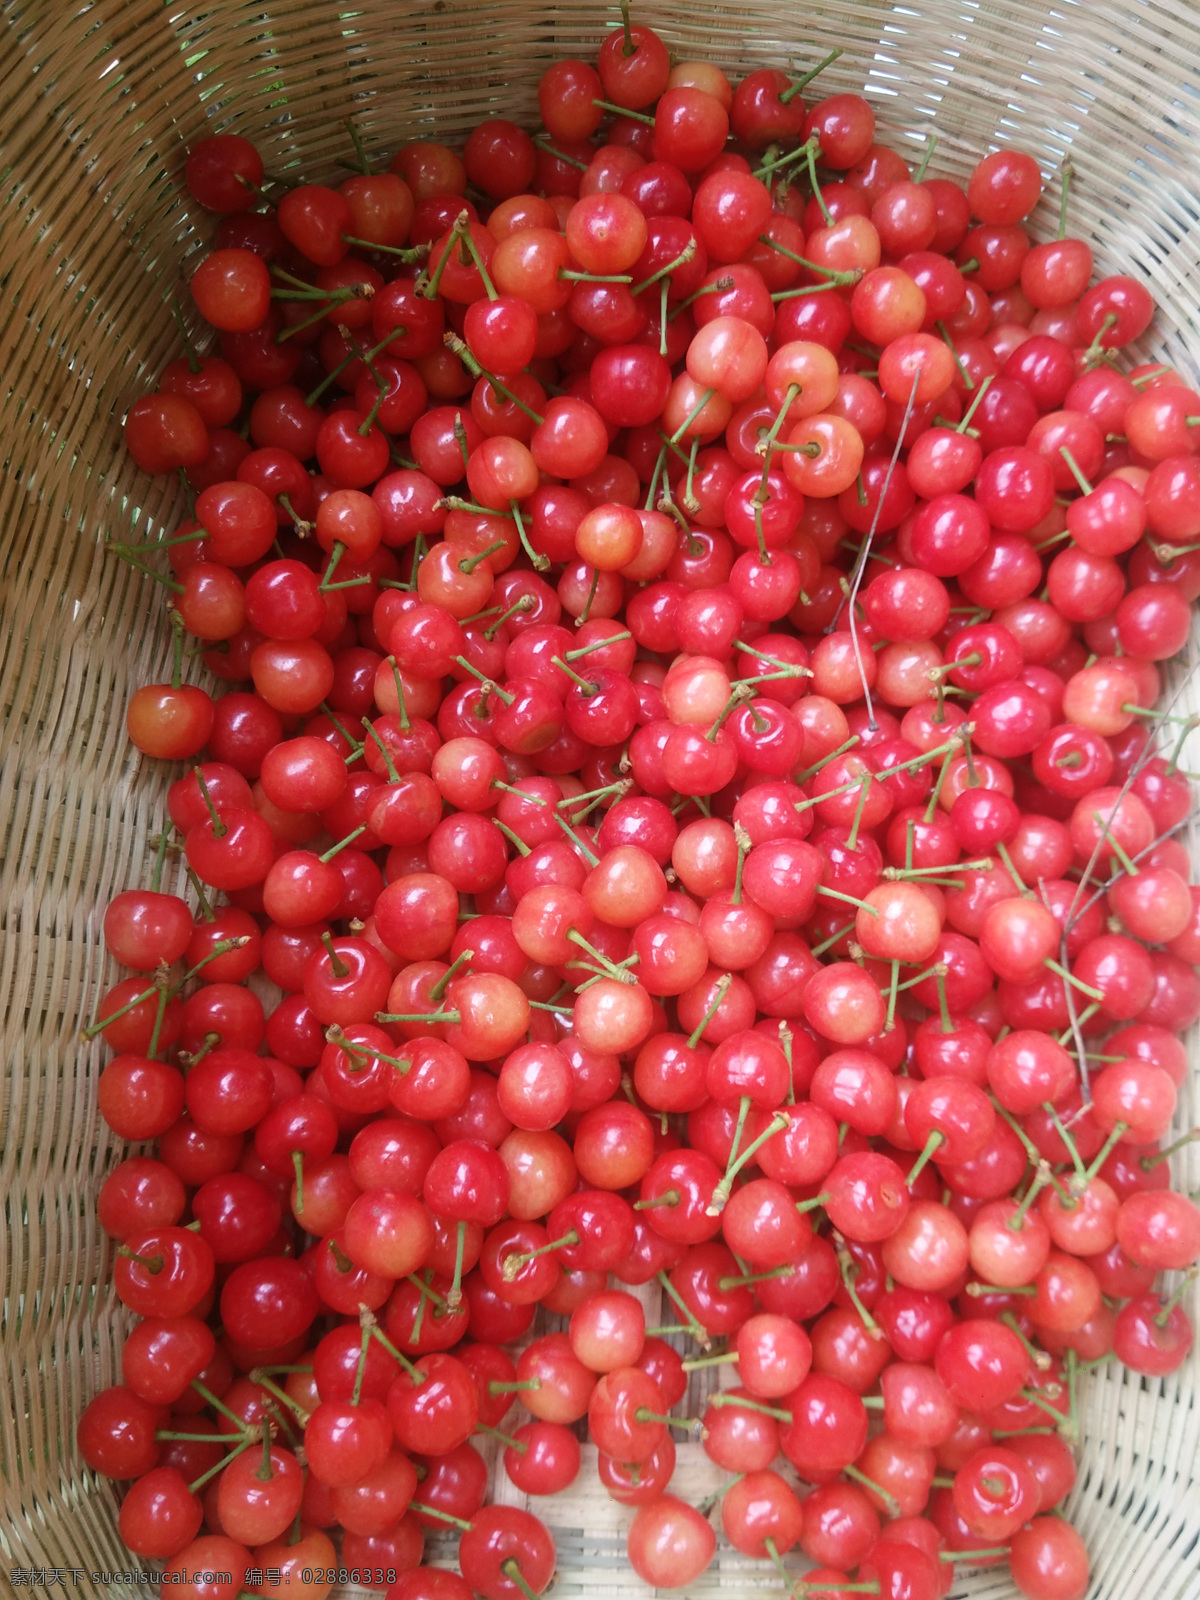 樱桃图片 红樱桃 红果子 竹篮 甜美 乡间红果 生物世界 水果